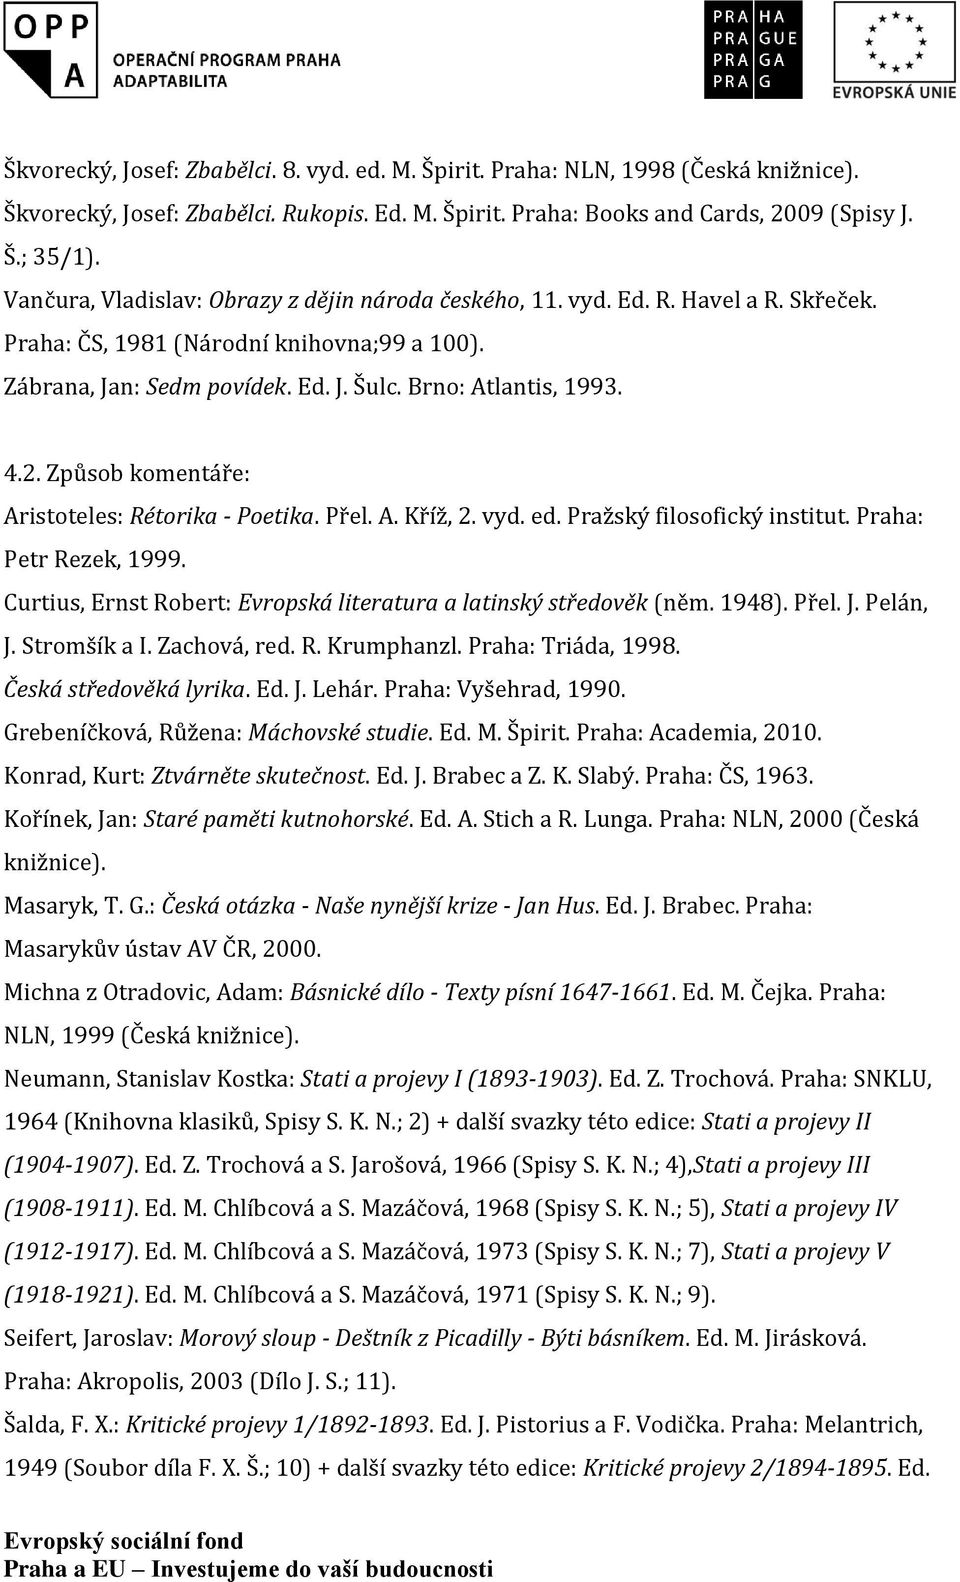 Způsob komentáře: Aristoteles: Rétorika - Poetika. Přel. A. Kříž, 2. vyd. ed. Pražský filosofický institut. Praha: Petr Rezek, 1999.